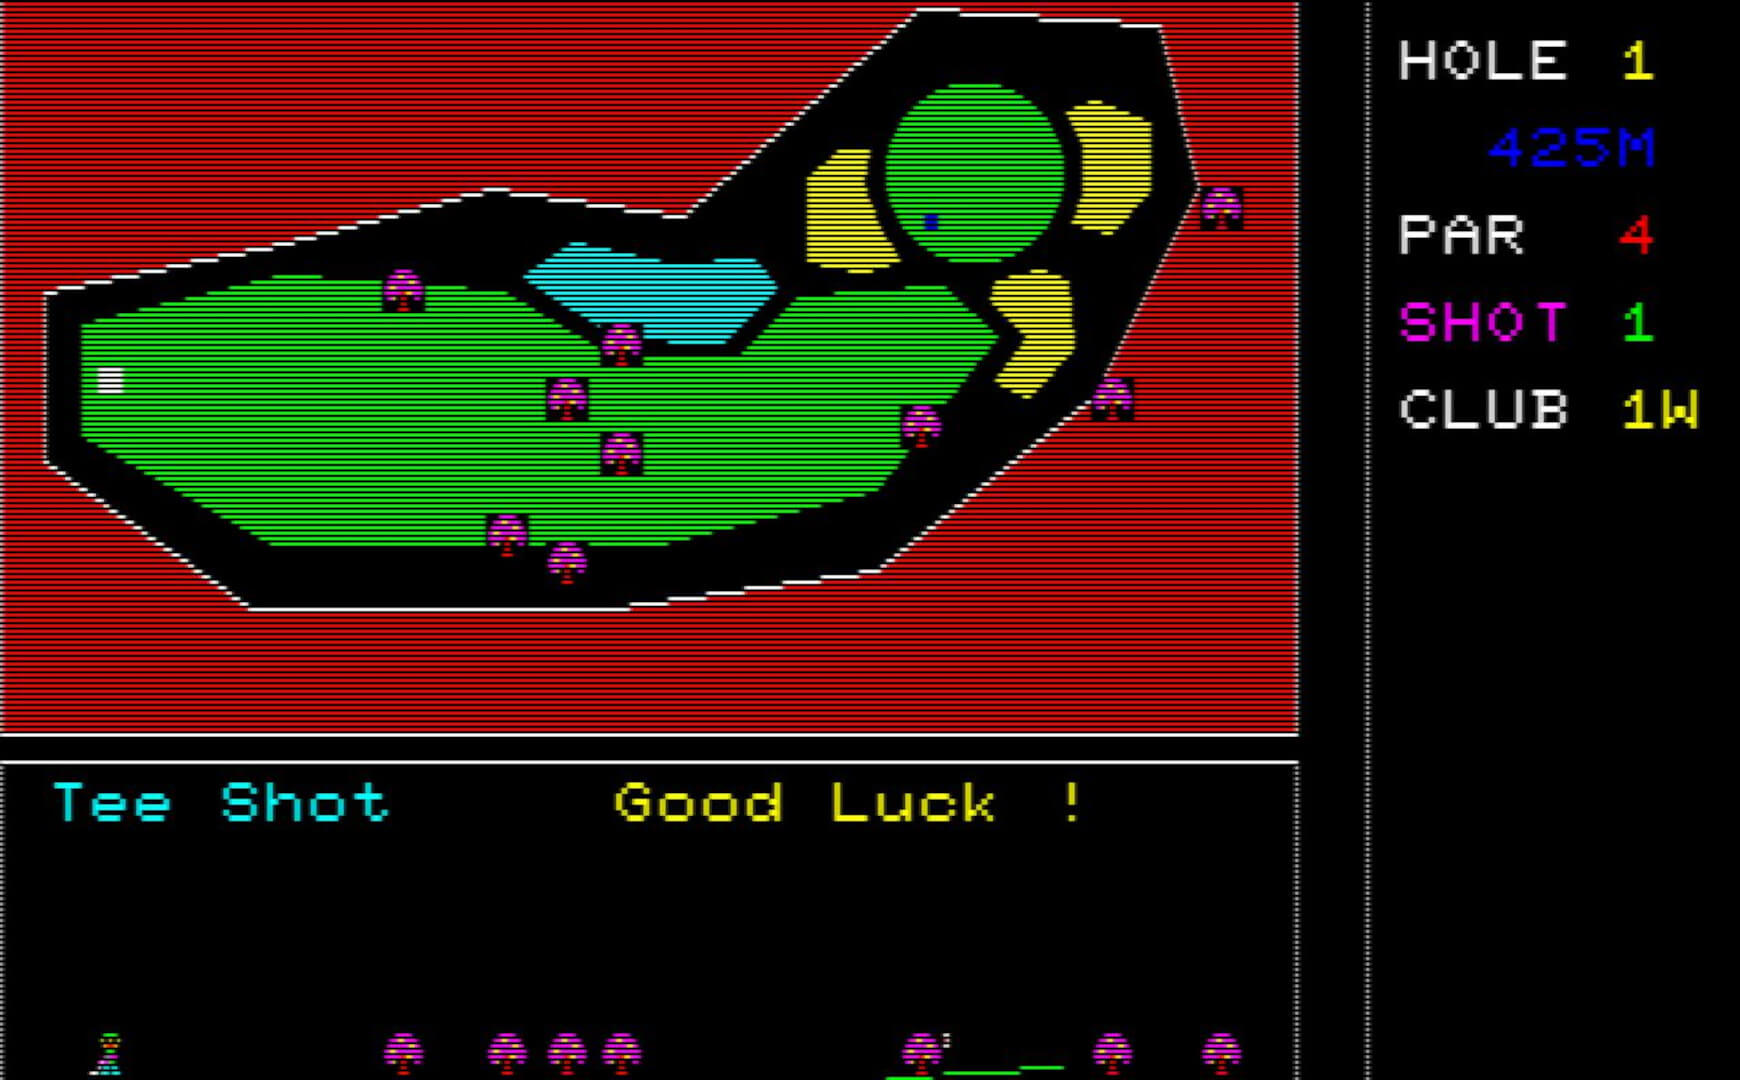 İlk Falcom klasik oyunu Computer The Golf'ten bir kare